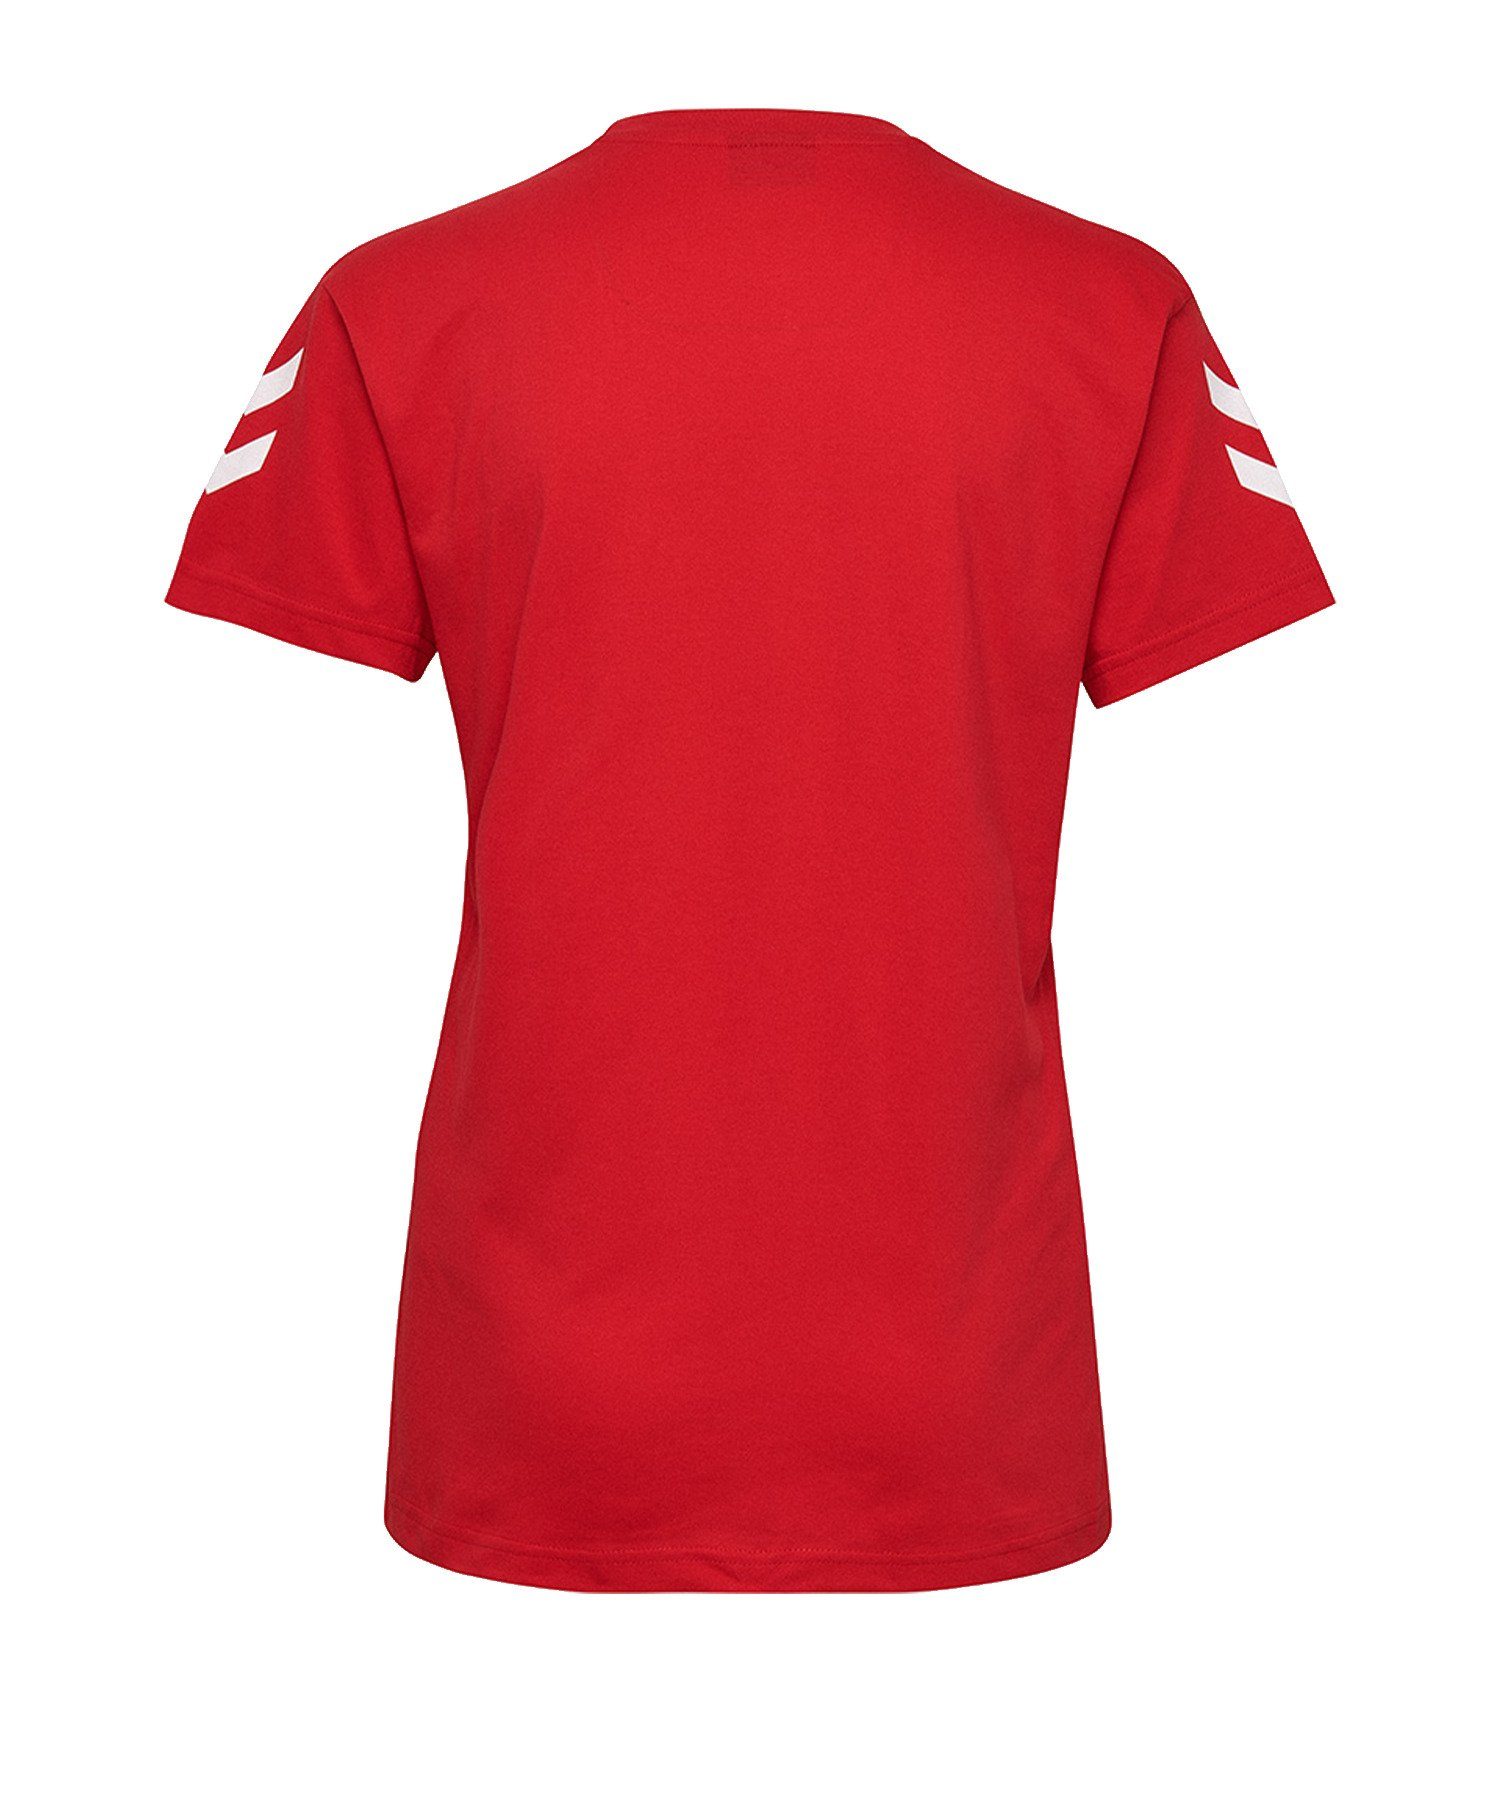 T-Shirt Rot Damen Cotton hummel default T-Shirt